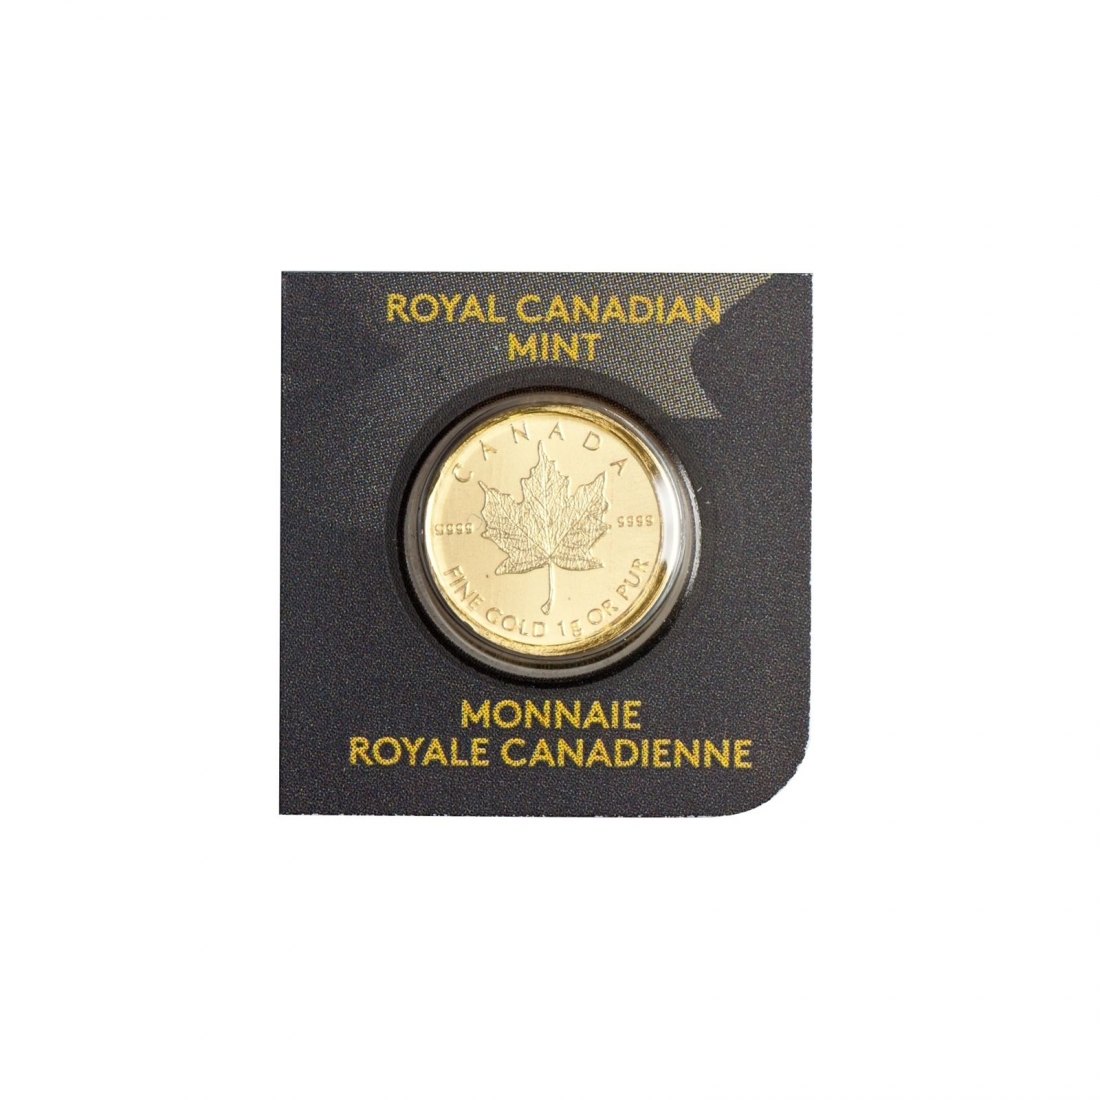 Maple Leaf Goldmünzen kaufen mit 1 Gramm günstig wie nie